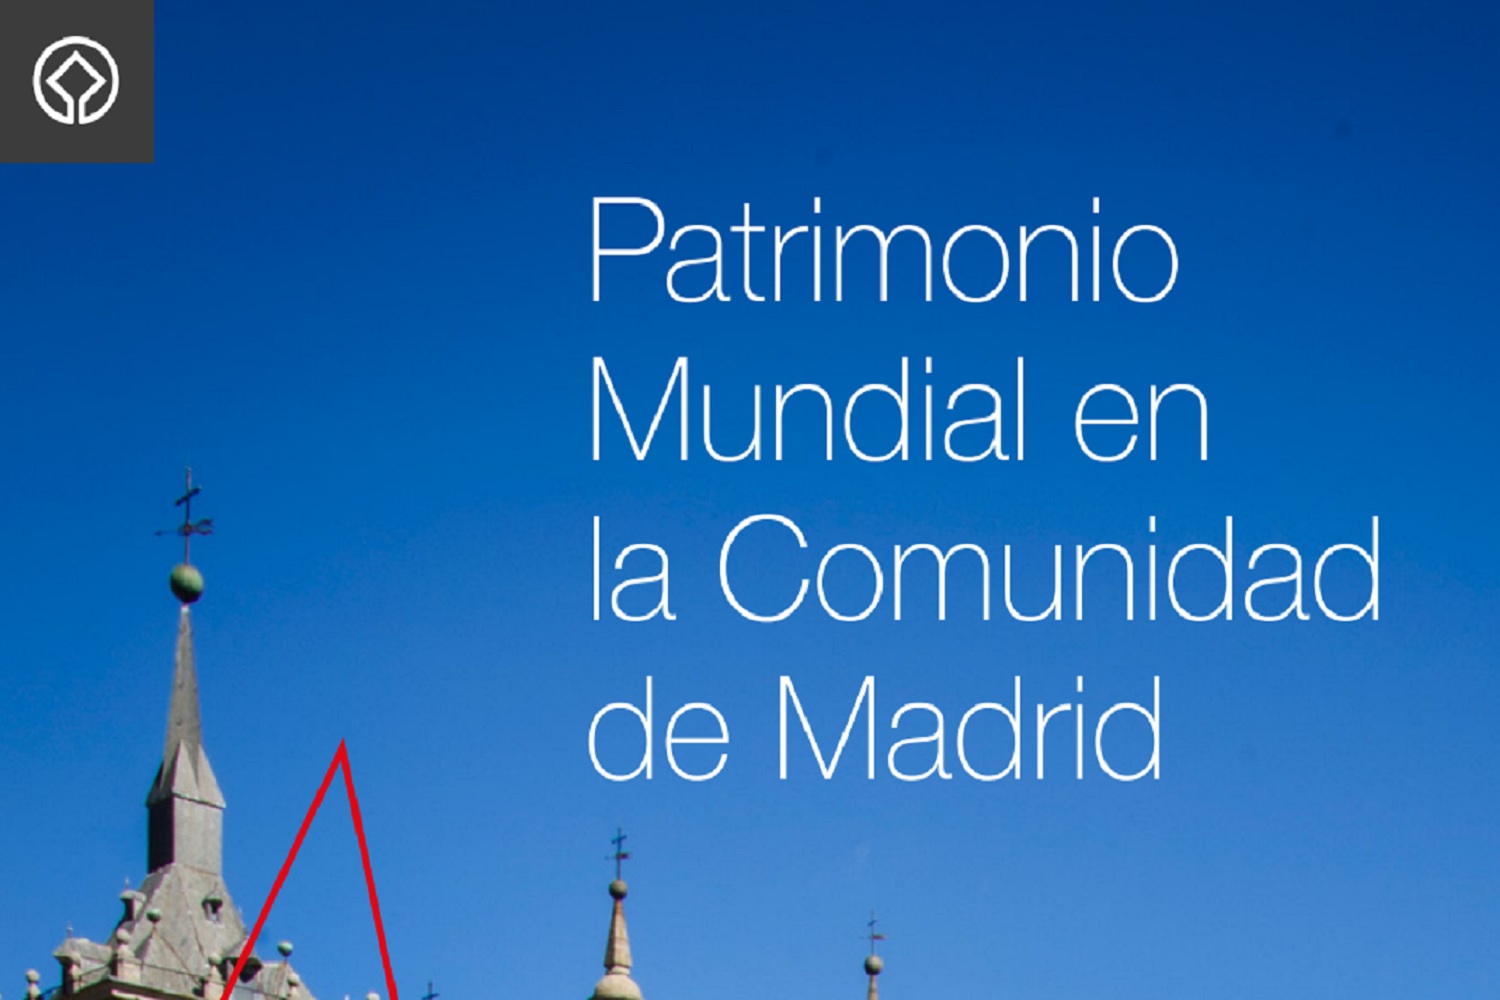 Patrimonio Mundial en la Comunidad de Madrid